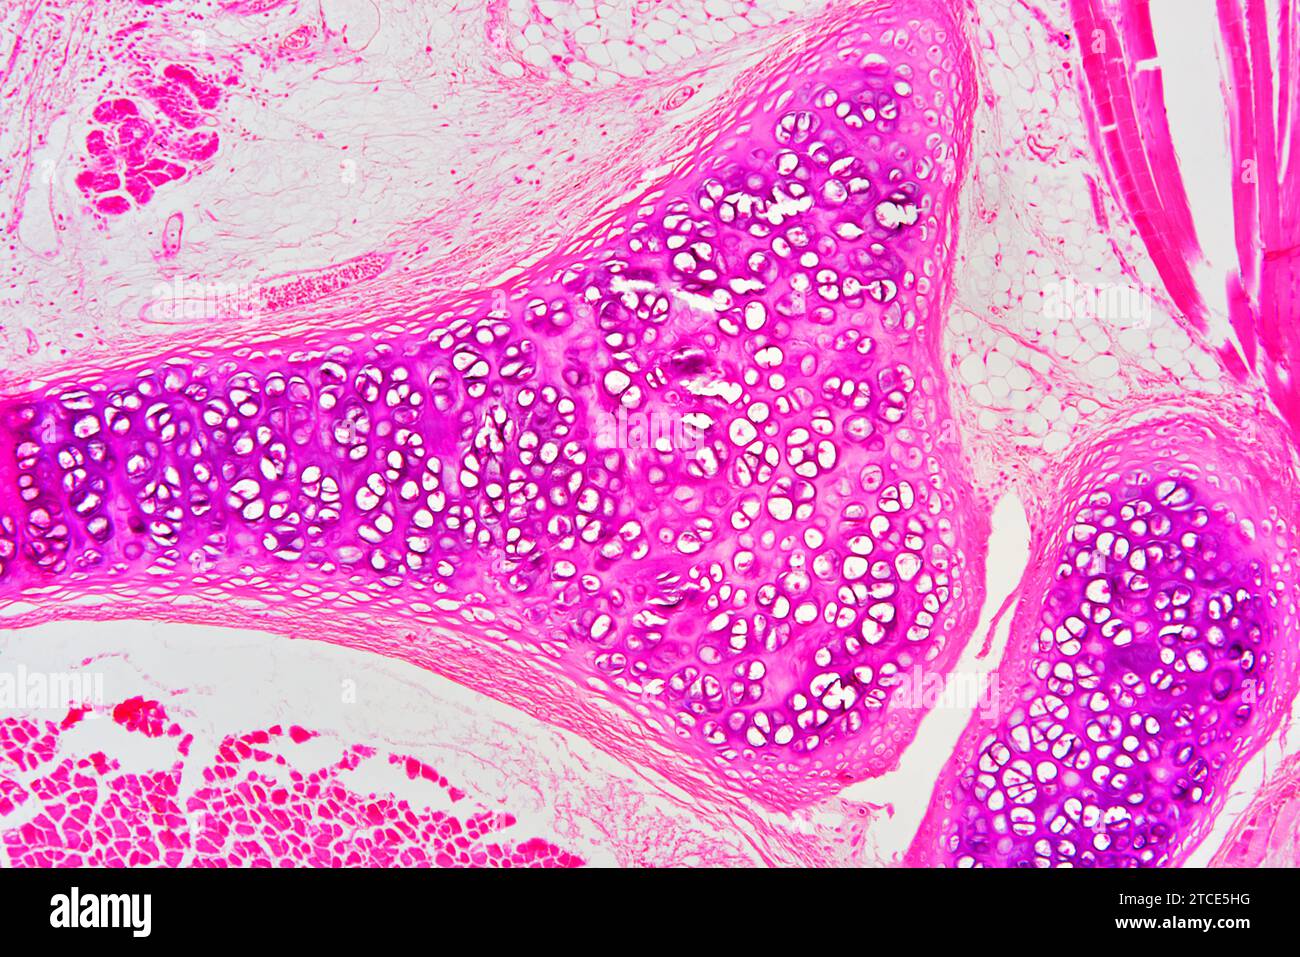 Cartilage hyaliné de la trachée montrant des chondrocytes, des fibres de collagène et une matrice. Microscope optique X100. Banque D'Images